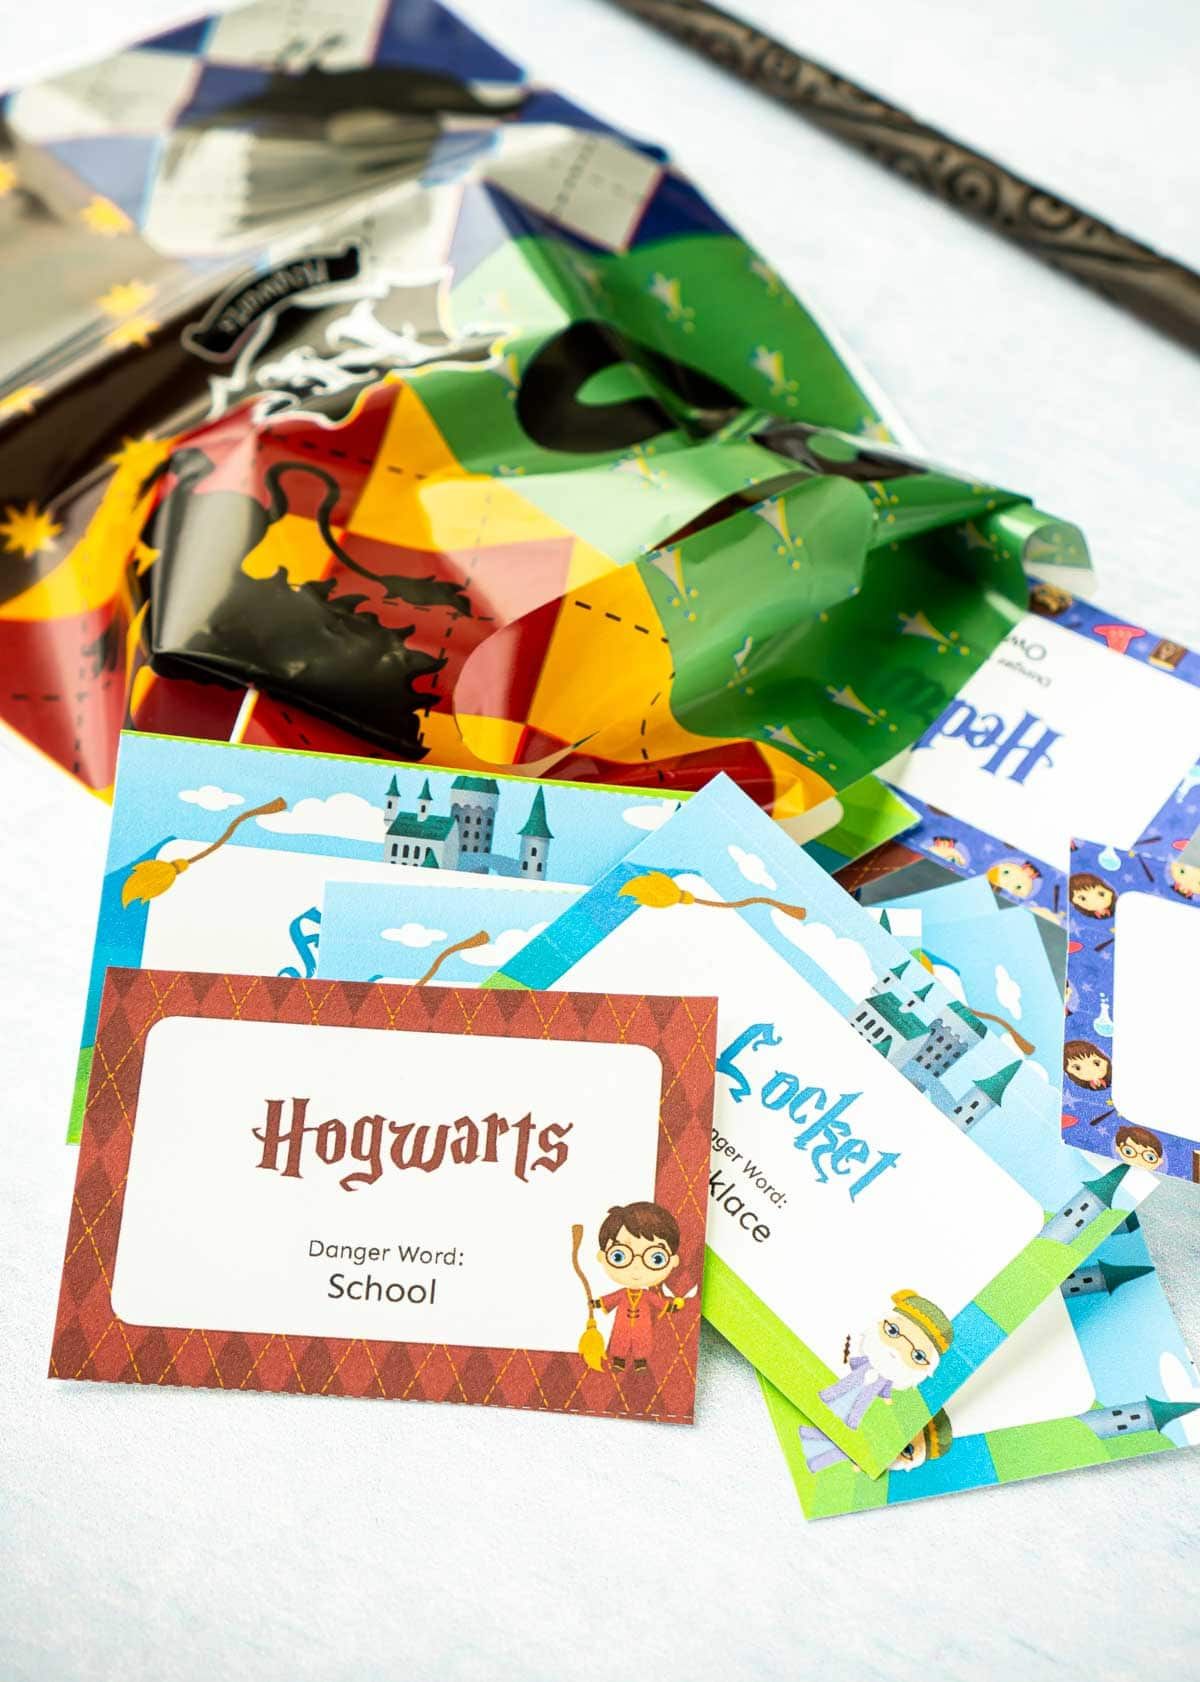 Majhne papirnate kartice s stavki Harry Potter in vrečko Harry Potter z dobrimi očmi